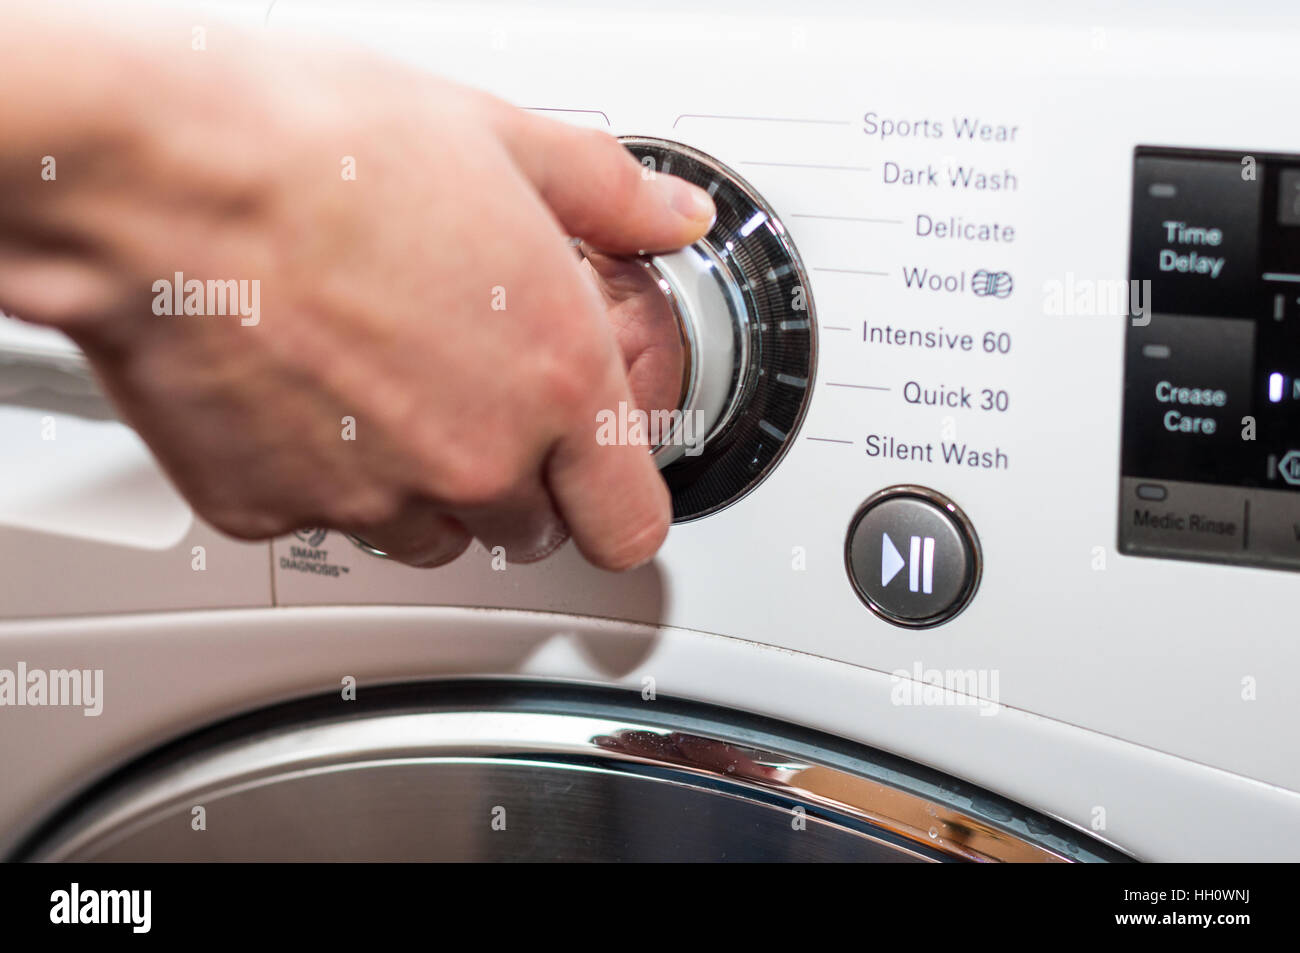 Laundry day - setting up washing machine program Stock Photo